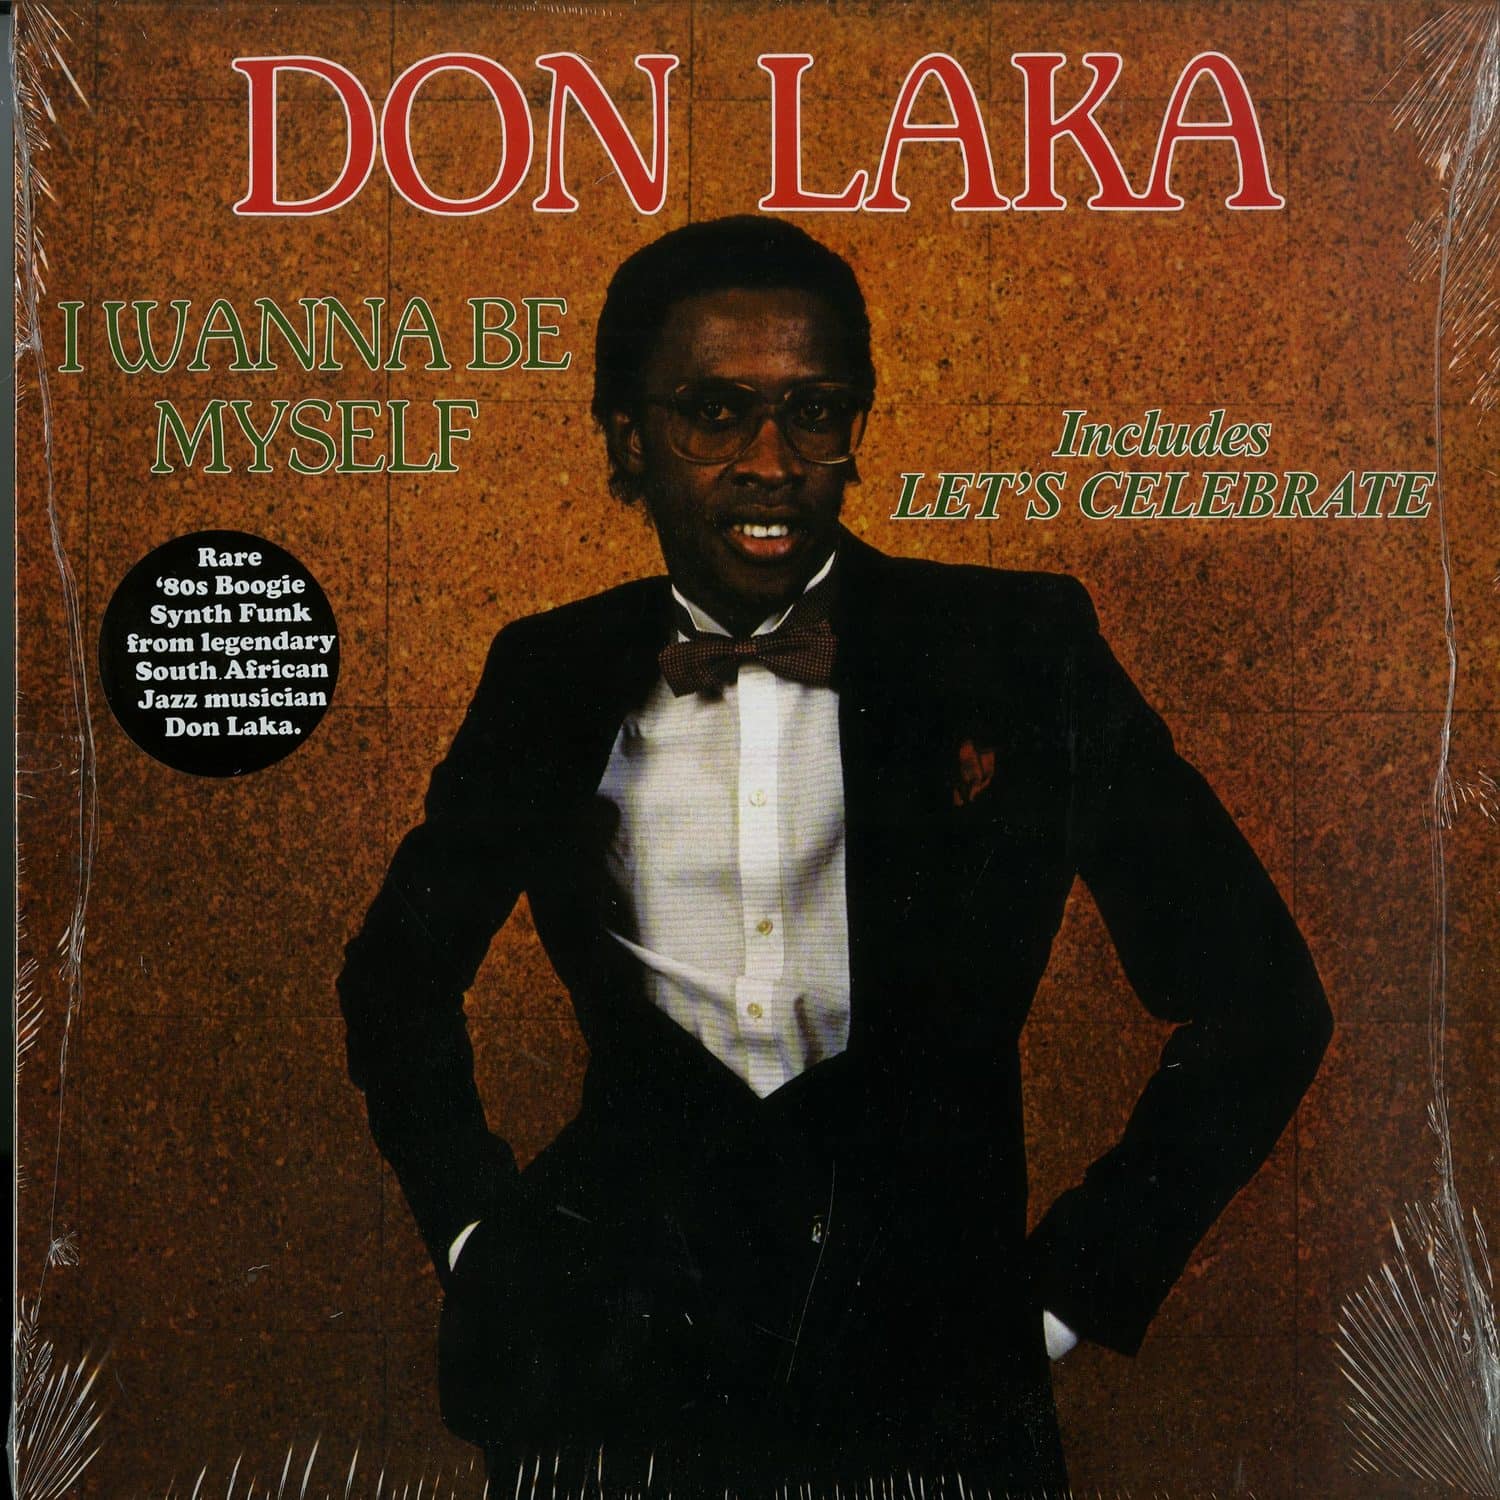 Don Laka - I WANNA BE MYSELF 